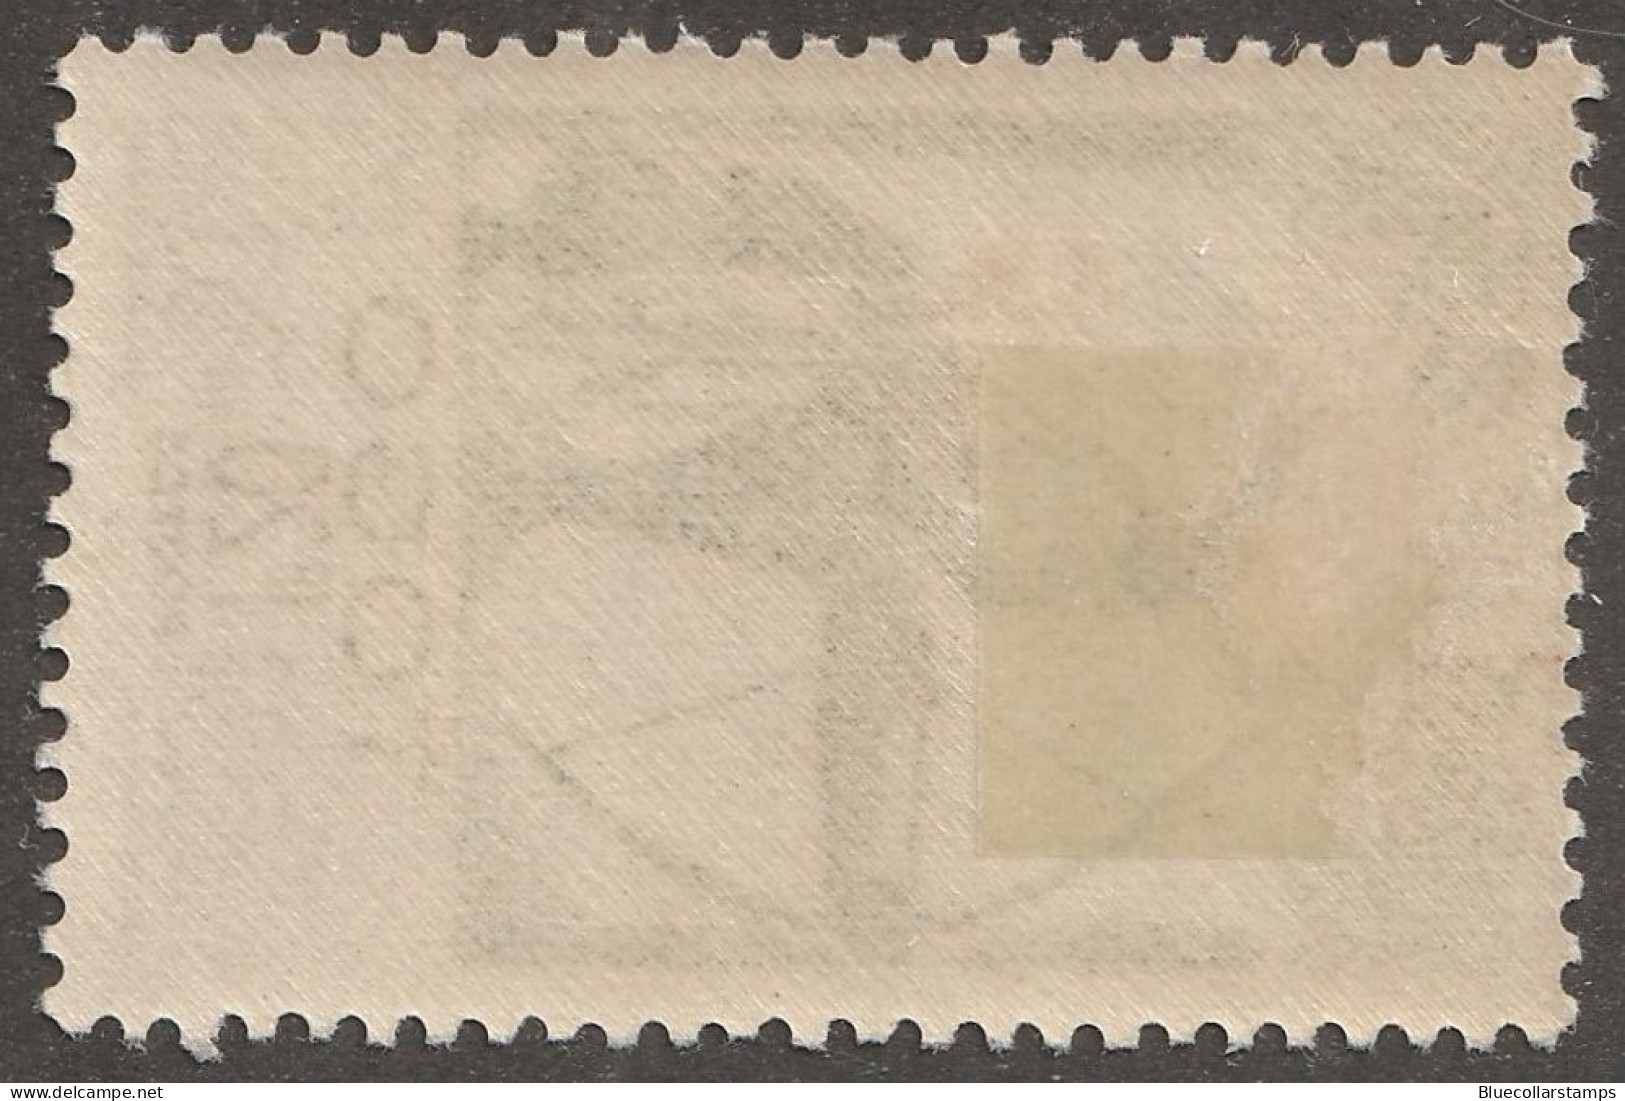 TOGO, Stamp, Scott#314, Mint, Hinged, 1f20, Warrior, - Togo (1960-...)